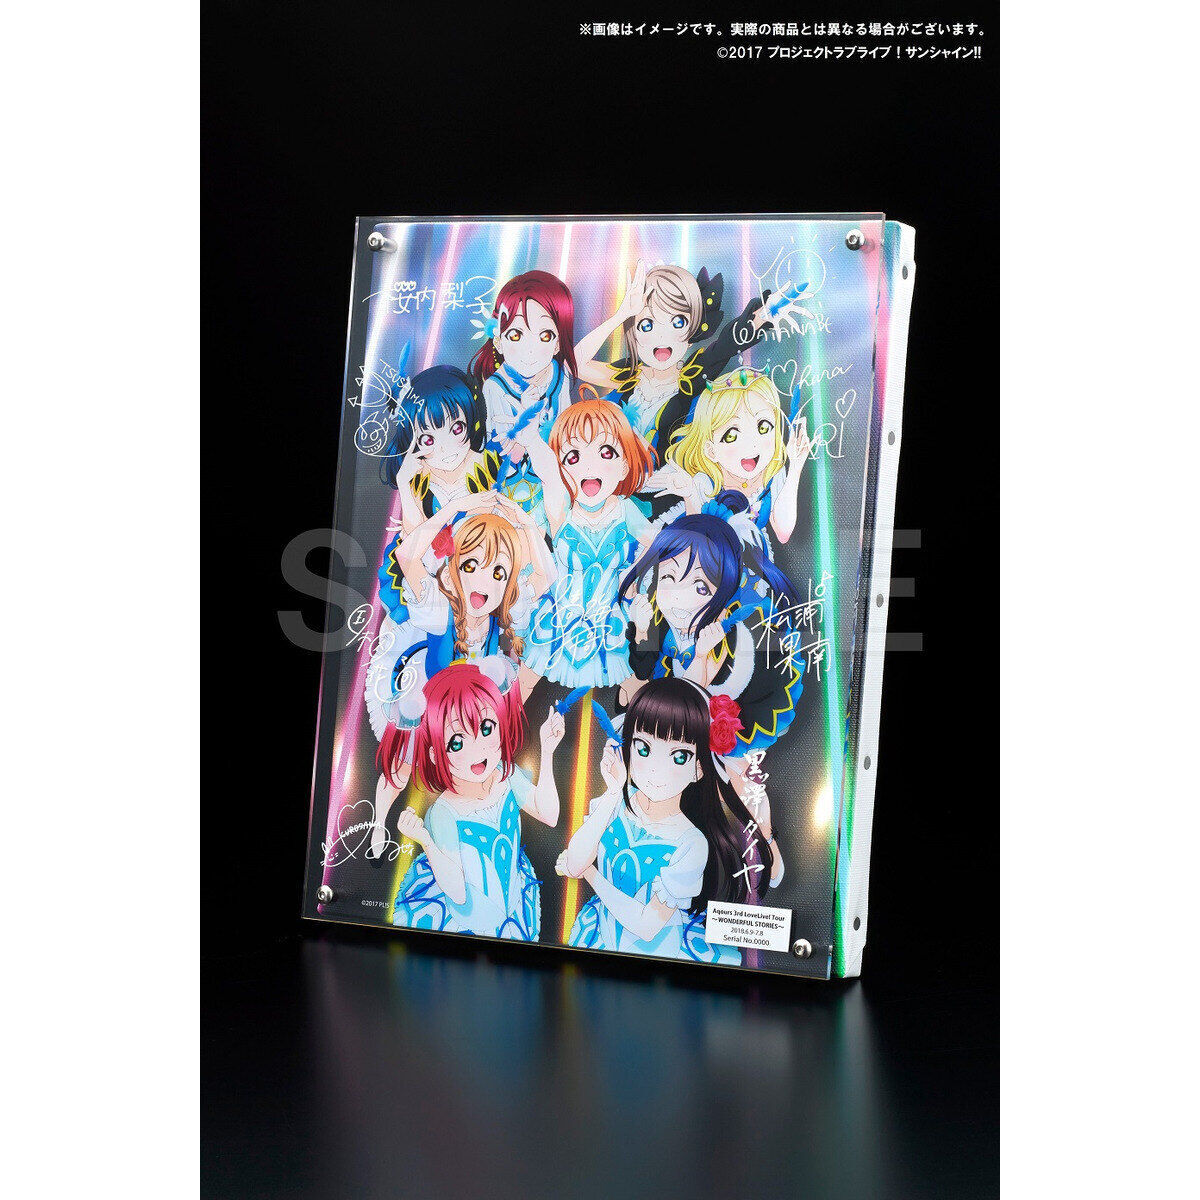 ラブライブ!サンシャイン!! Blu-ray BOX - DVD/ブルーレイ